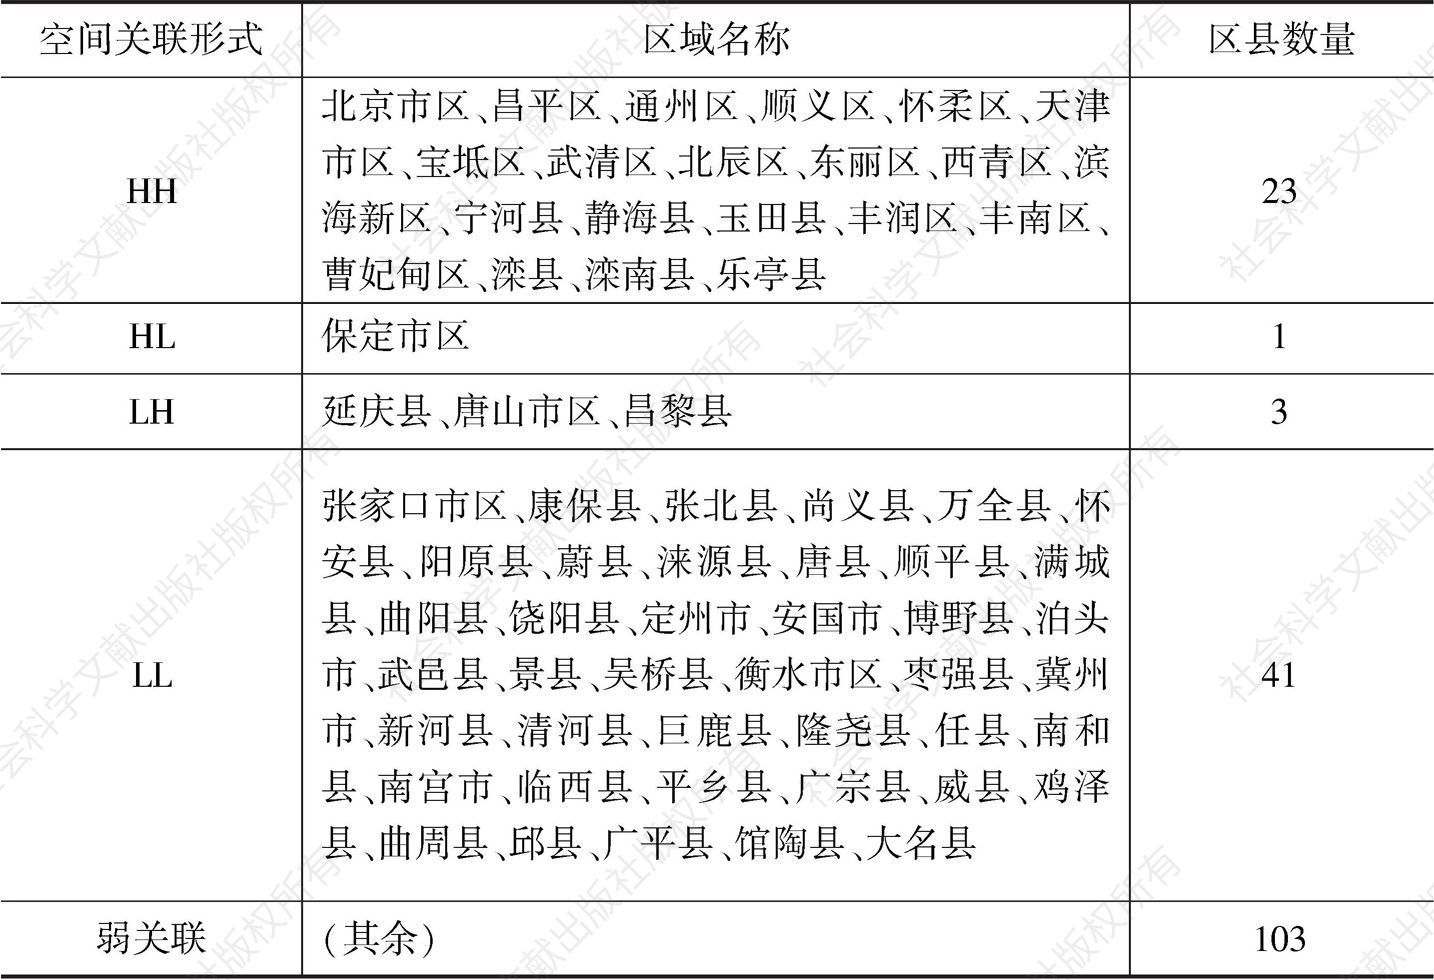 表6 2015年京津冀各区县经济增长的空间关联形式